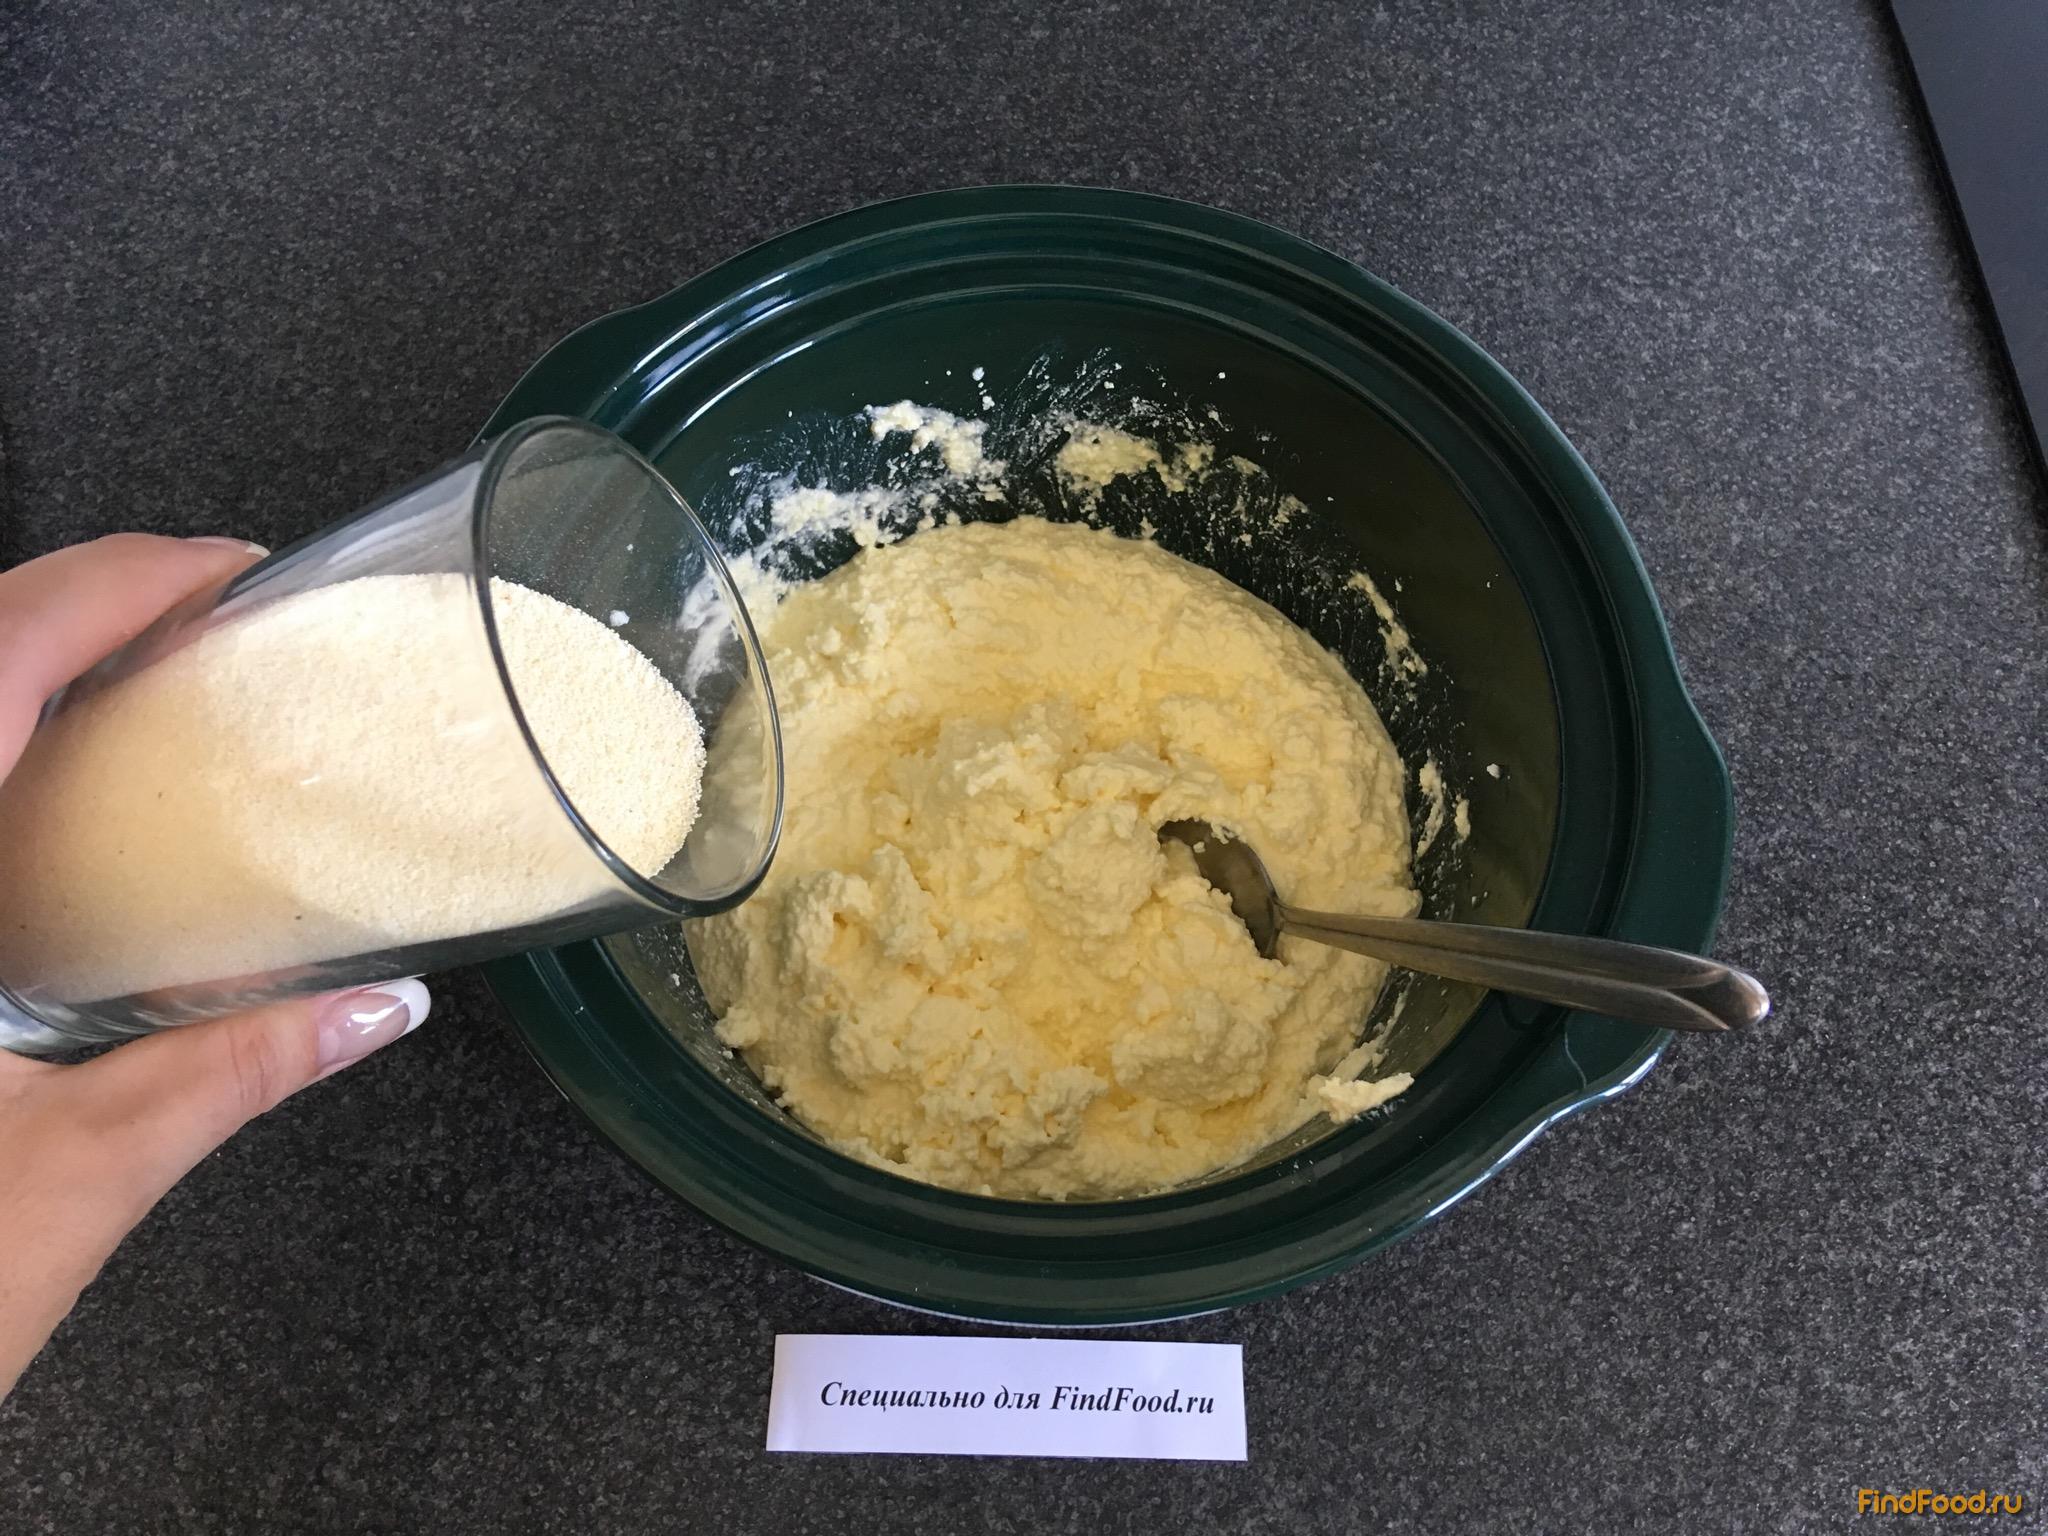 Сырники с домашним творогом рецепт с фото 6-го шага 